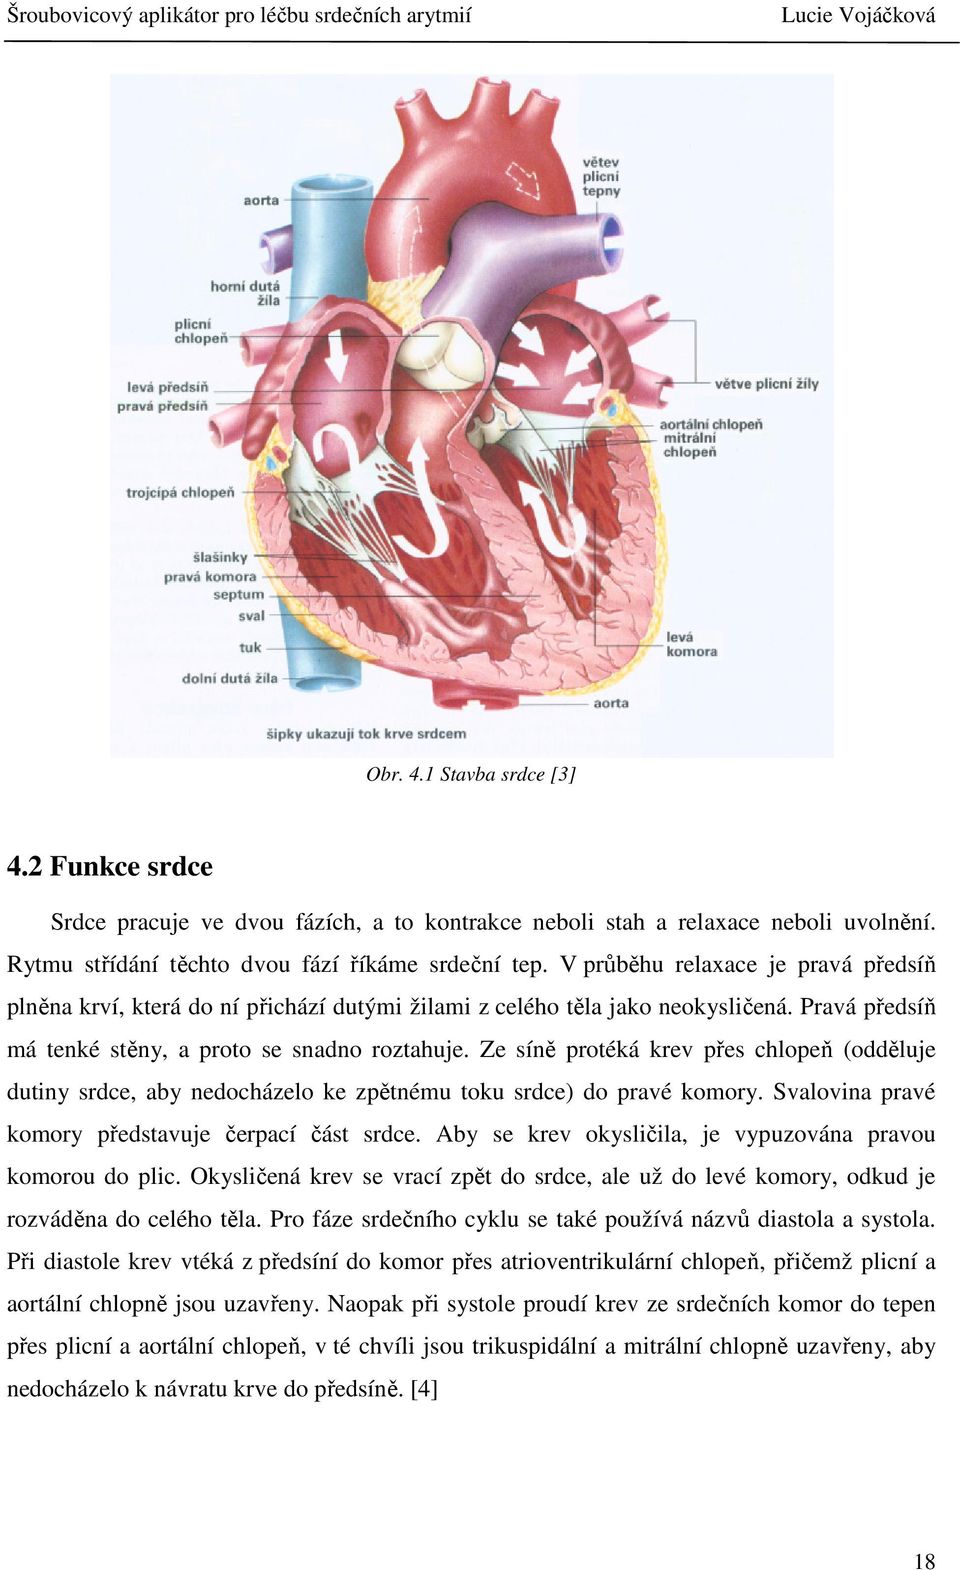 Ze síně protéká krev přes chlopeň (odděluje dutiny srdce, aby nedocházelo ke zpětnému toku srdce) do pravé komory. Svalovina pravé komory představuje čerpací část srdce.